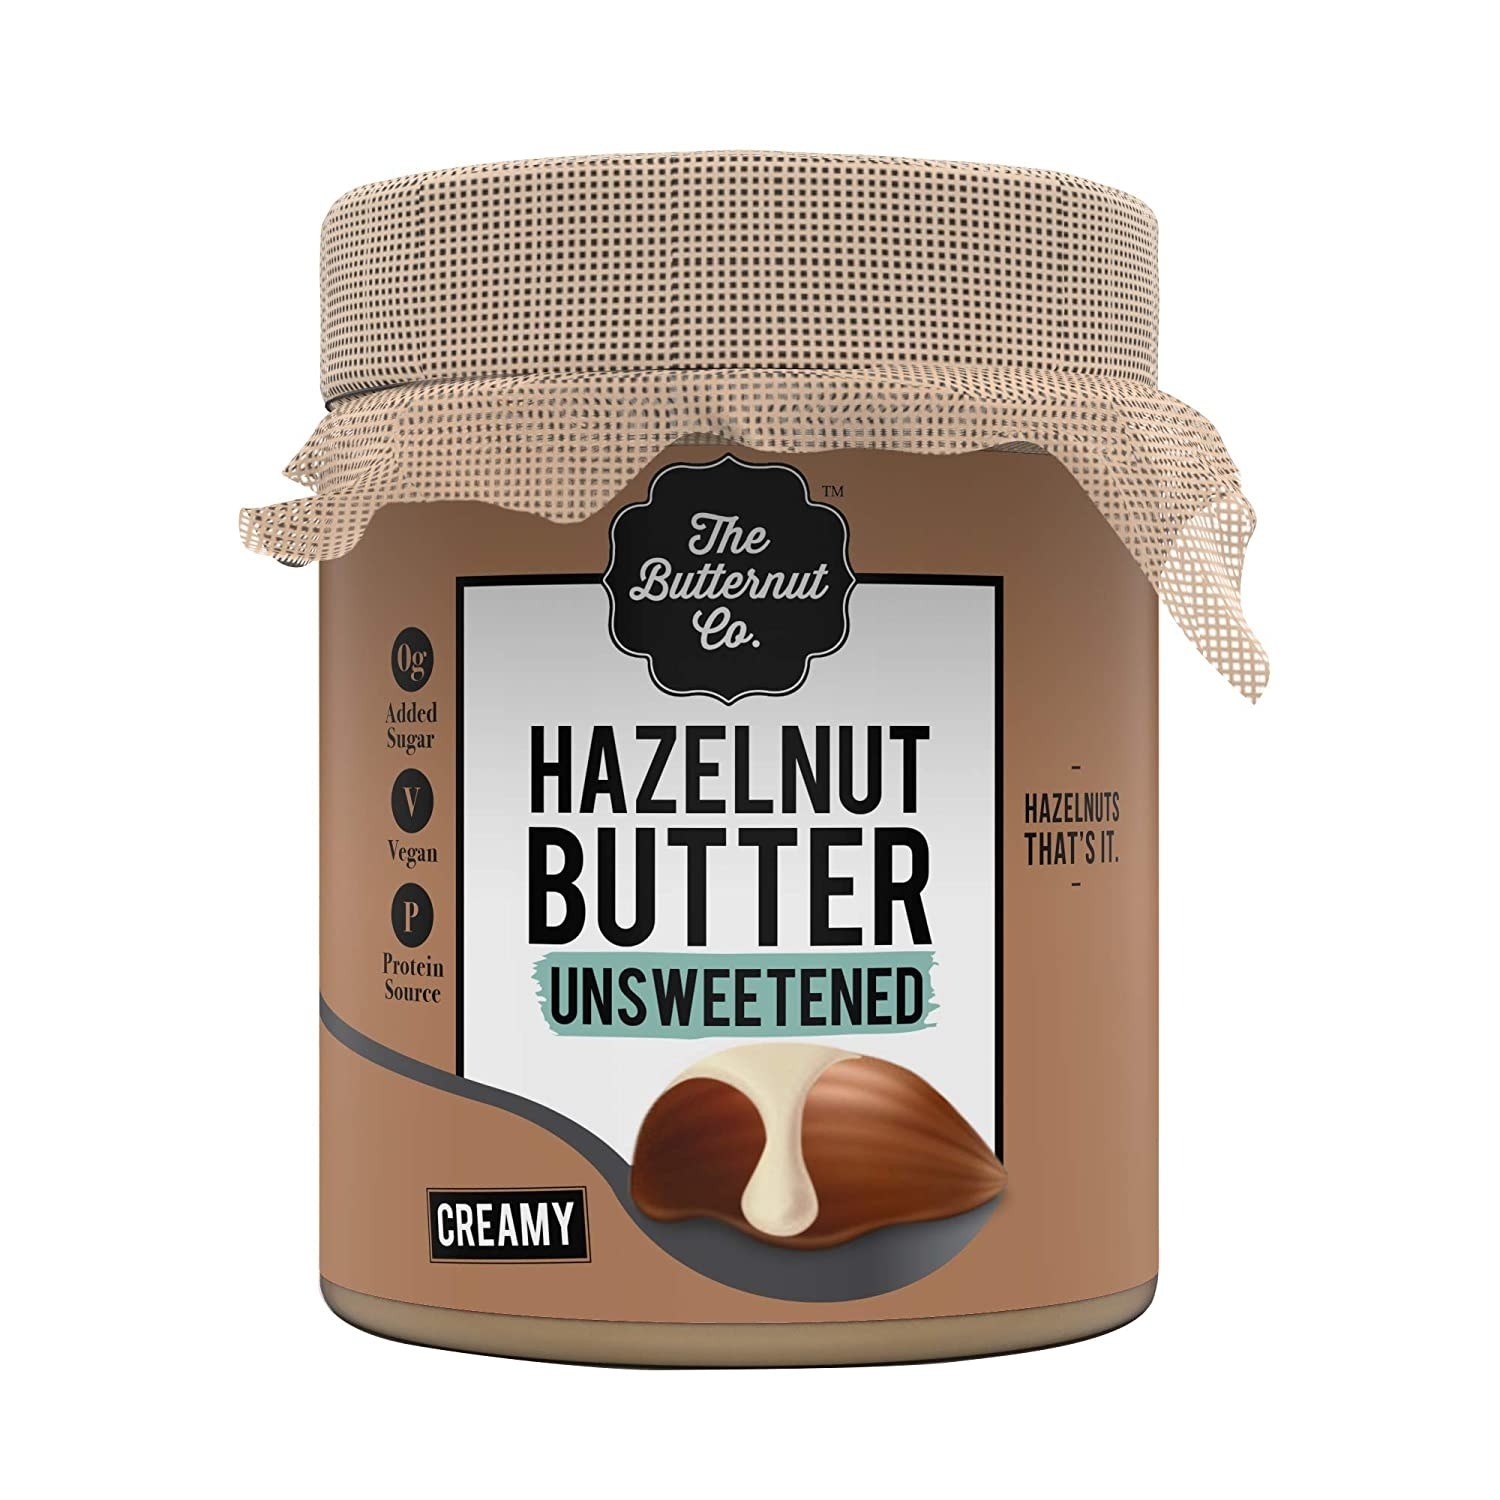 Packaging of the hazelnut butter 